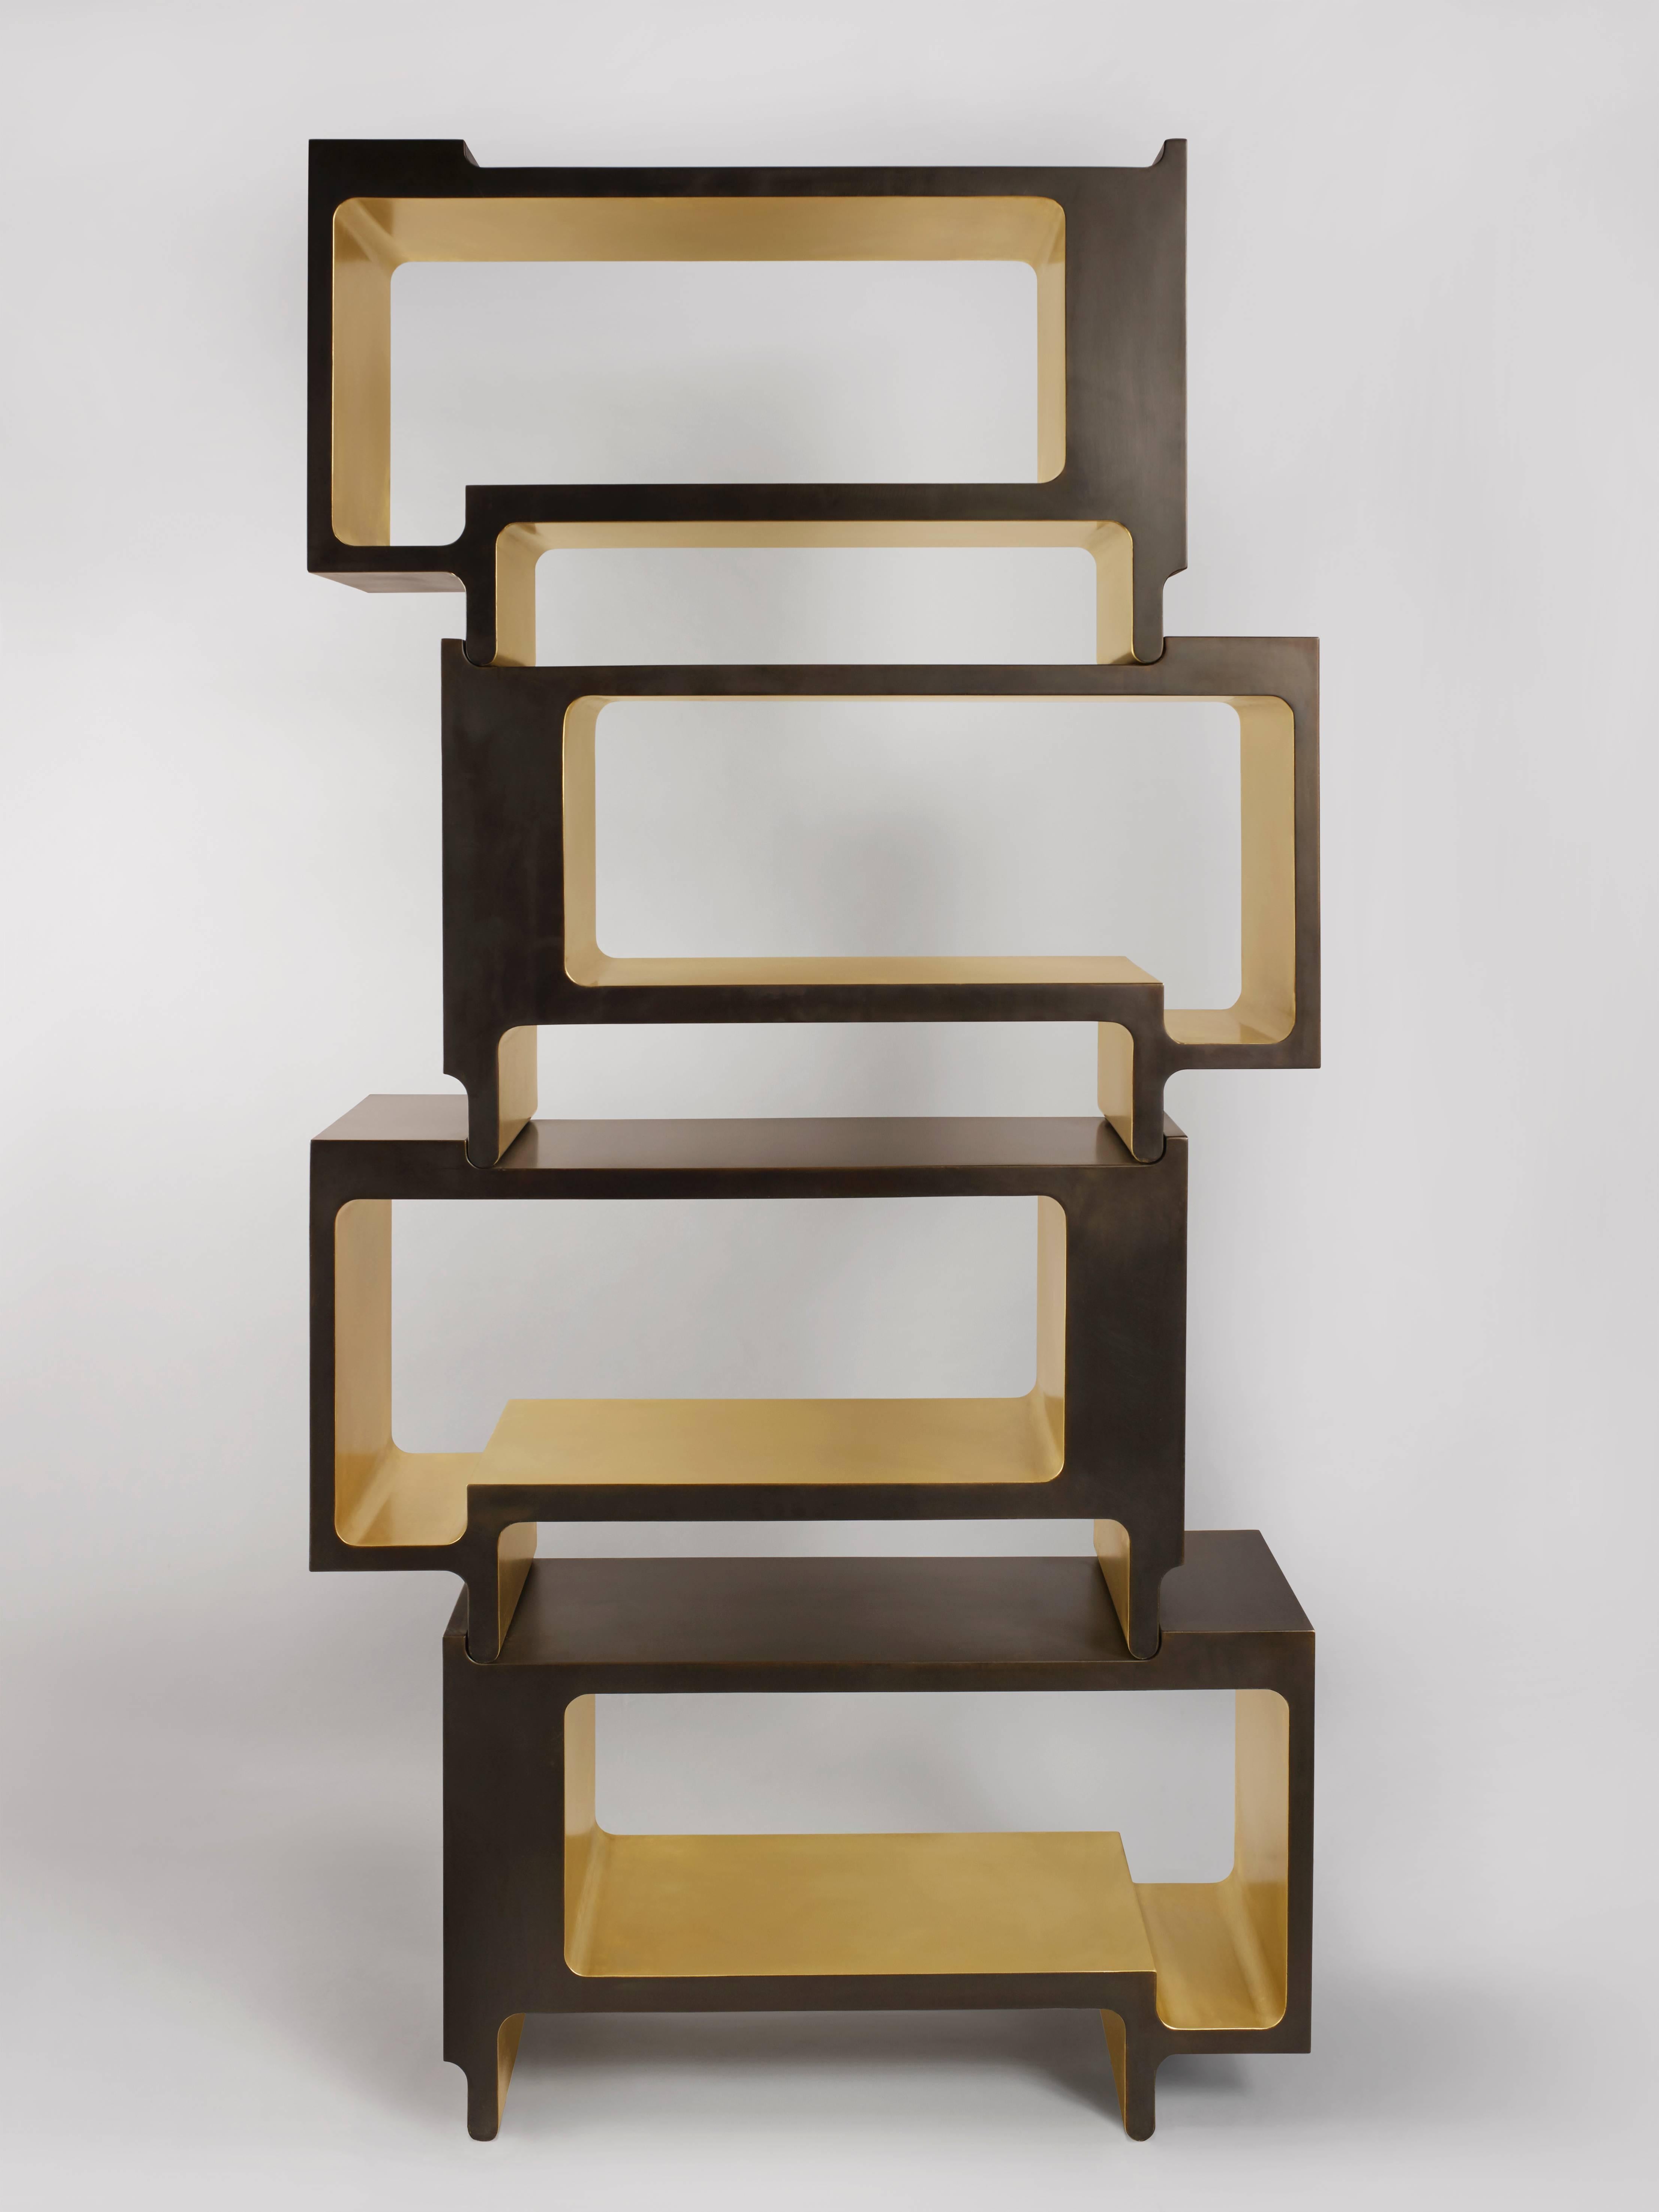 l'étagère XiangSheng II est un élégant objet de collection qui combine des surfaces en bronze brossé de couleur champagne et du bronze oxydé à la patine brune intense. Cette bibliothèque en édition limitée comprend quatre unités individuelles. Les